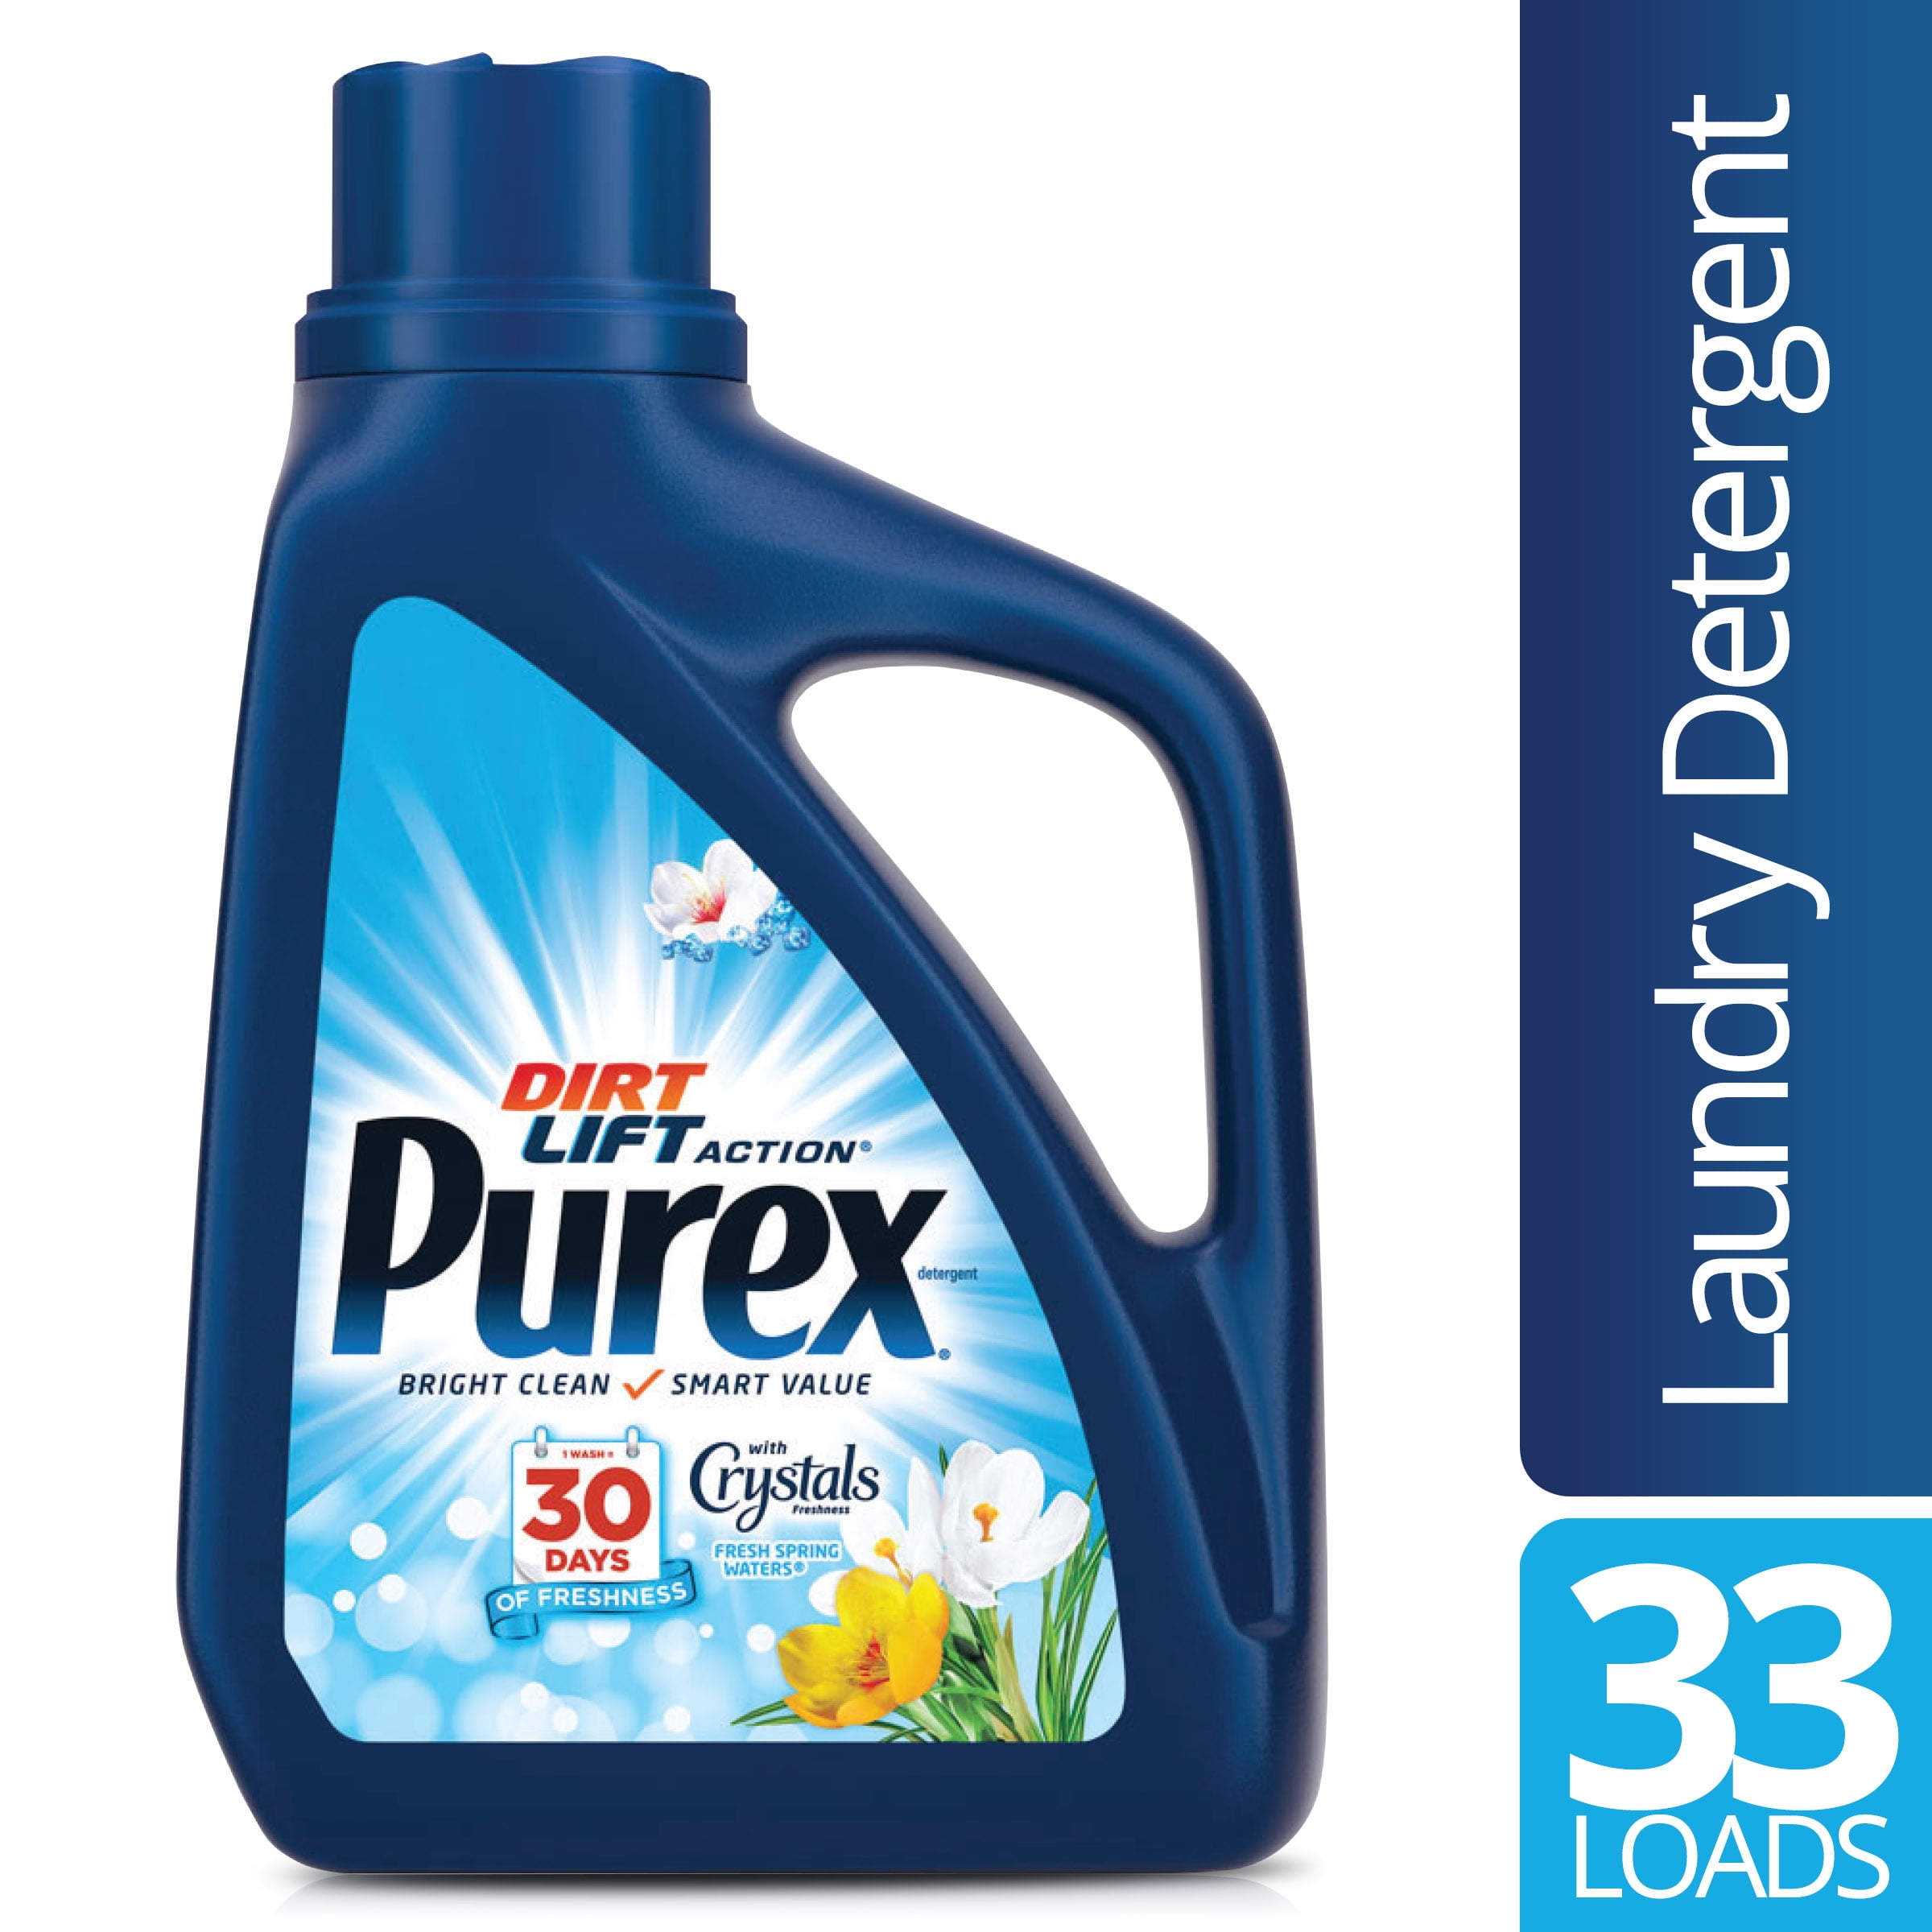 purex washing detergent